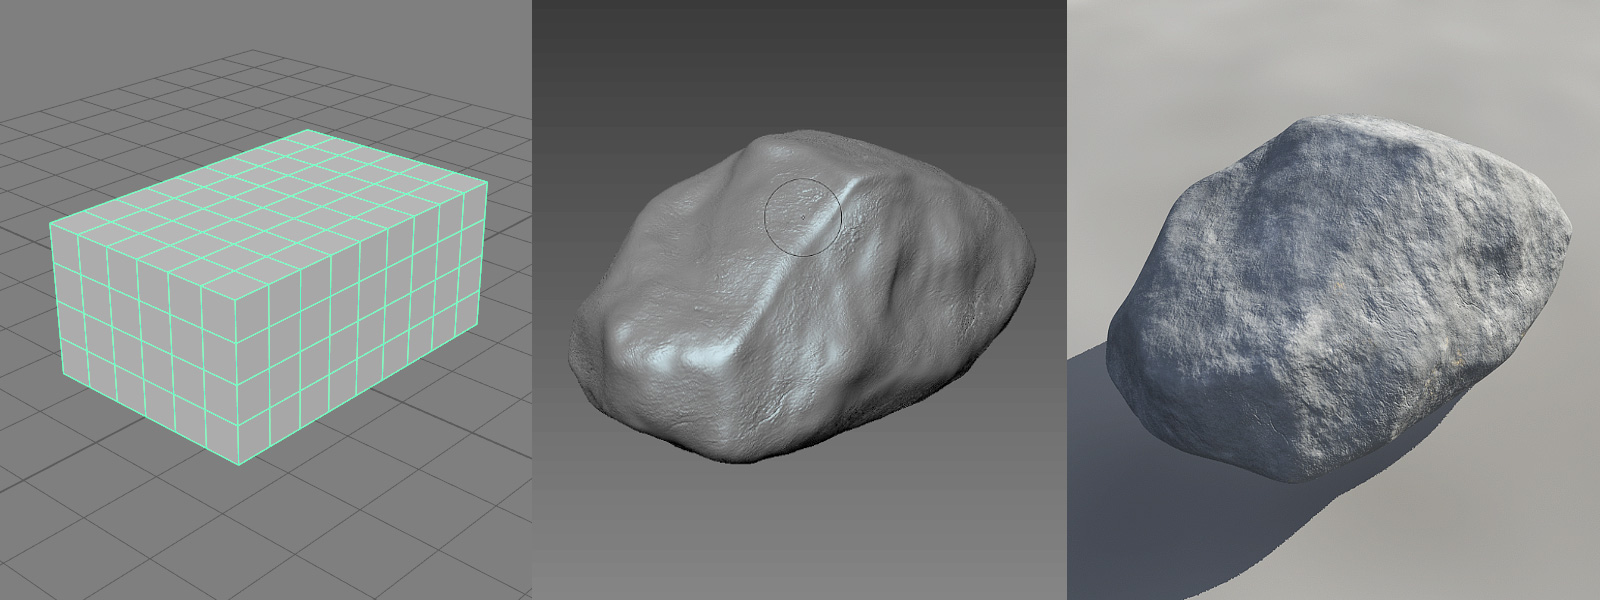 Modeling a rock